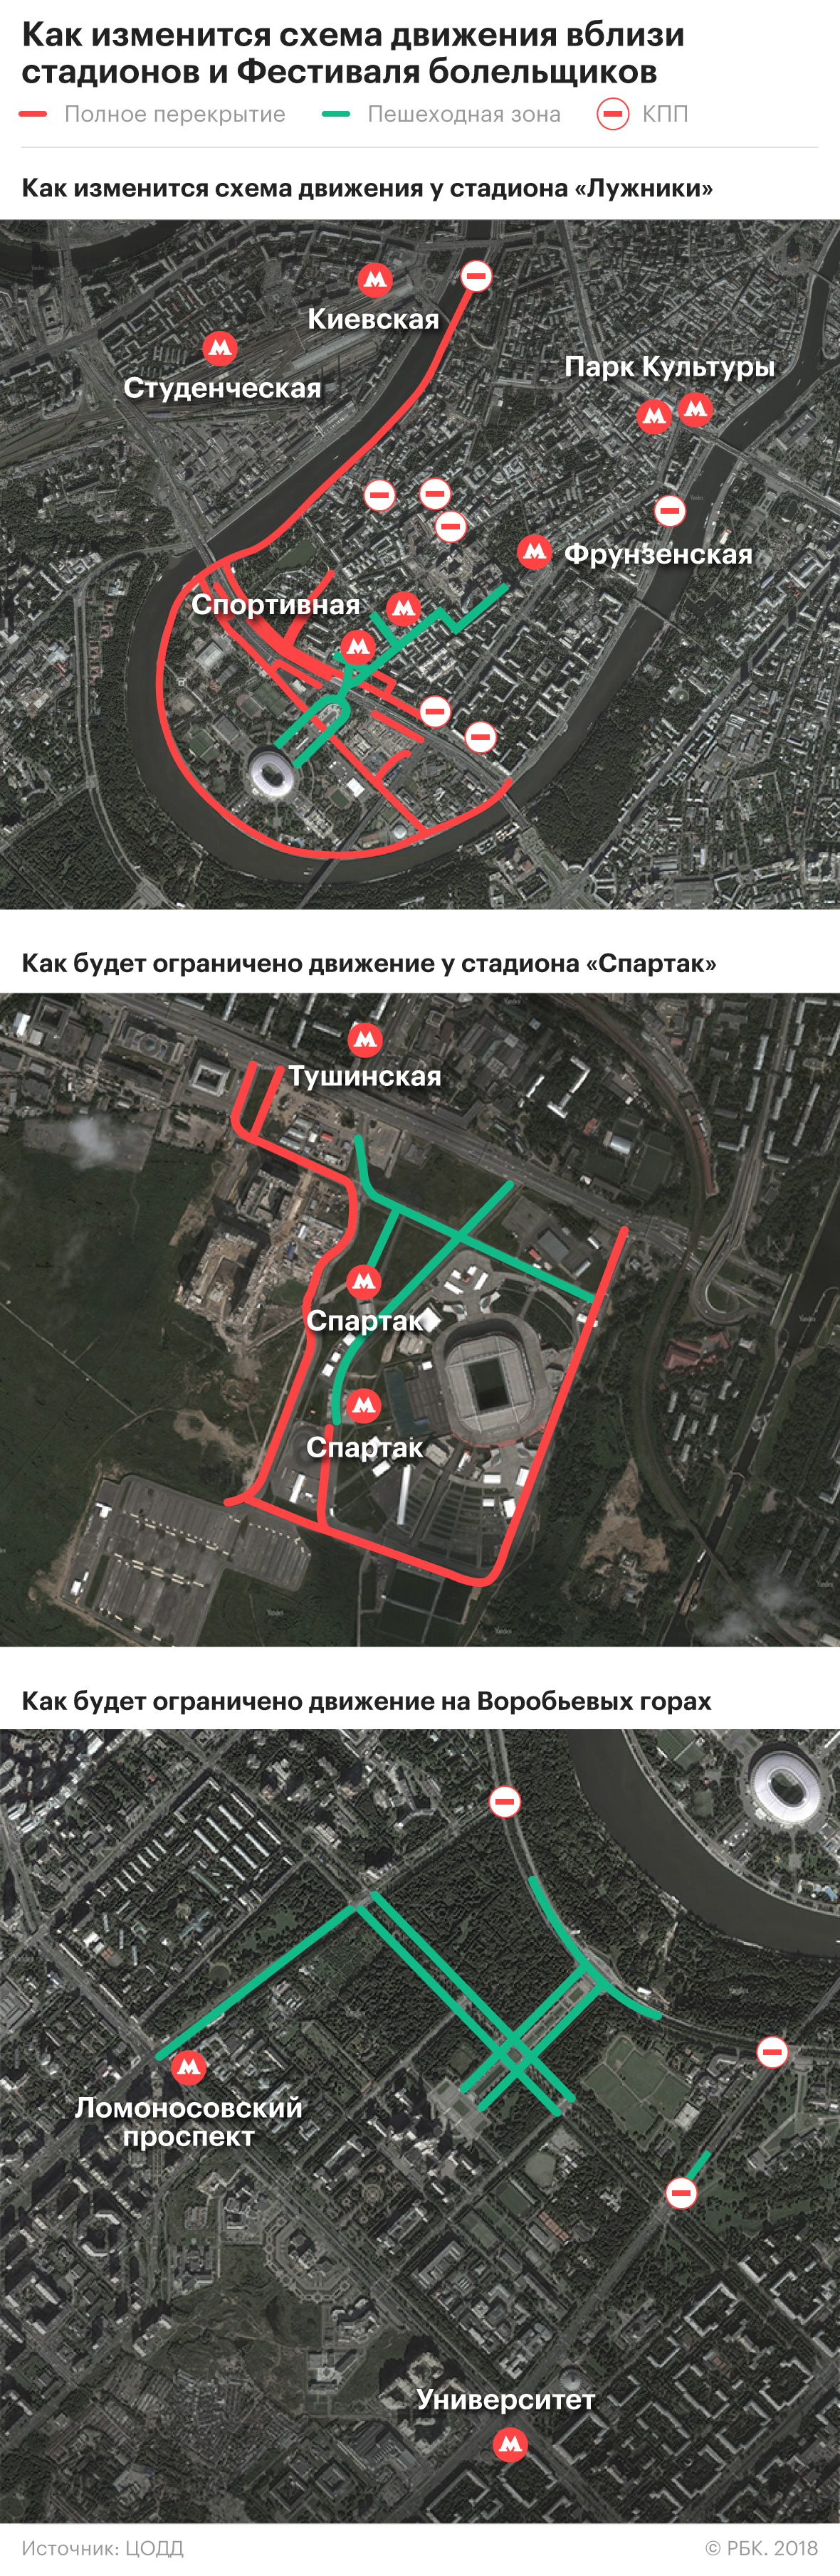 Власти Москвы обнародовали схему перекрытия улиц из-за ЧМ-2018